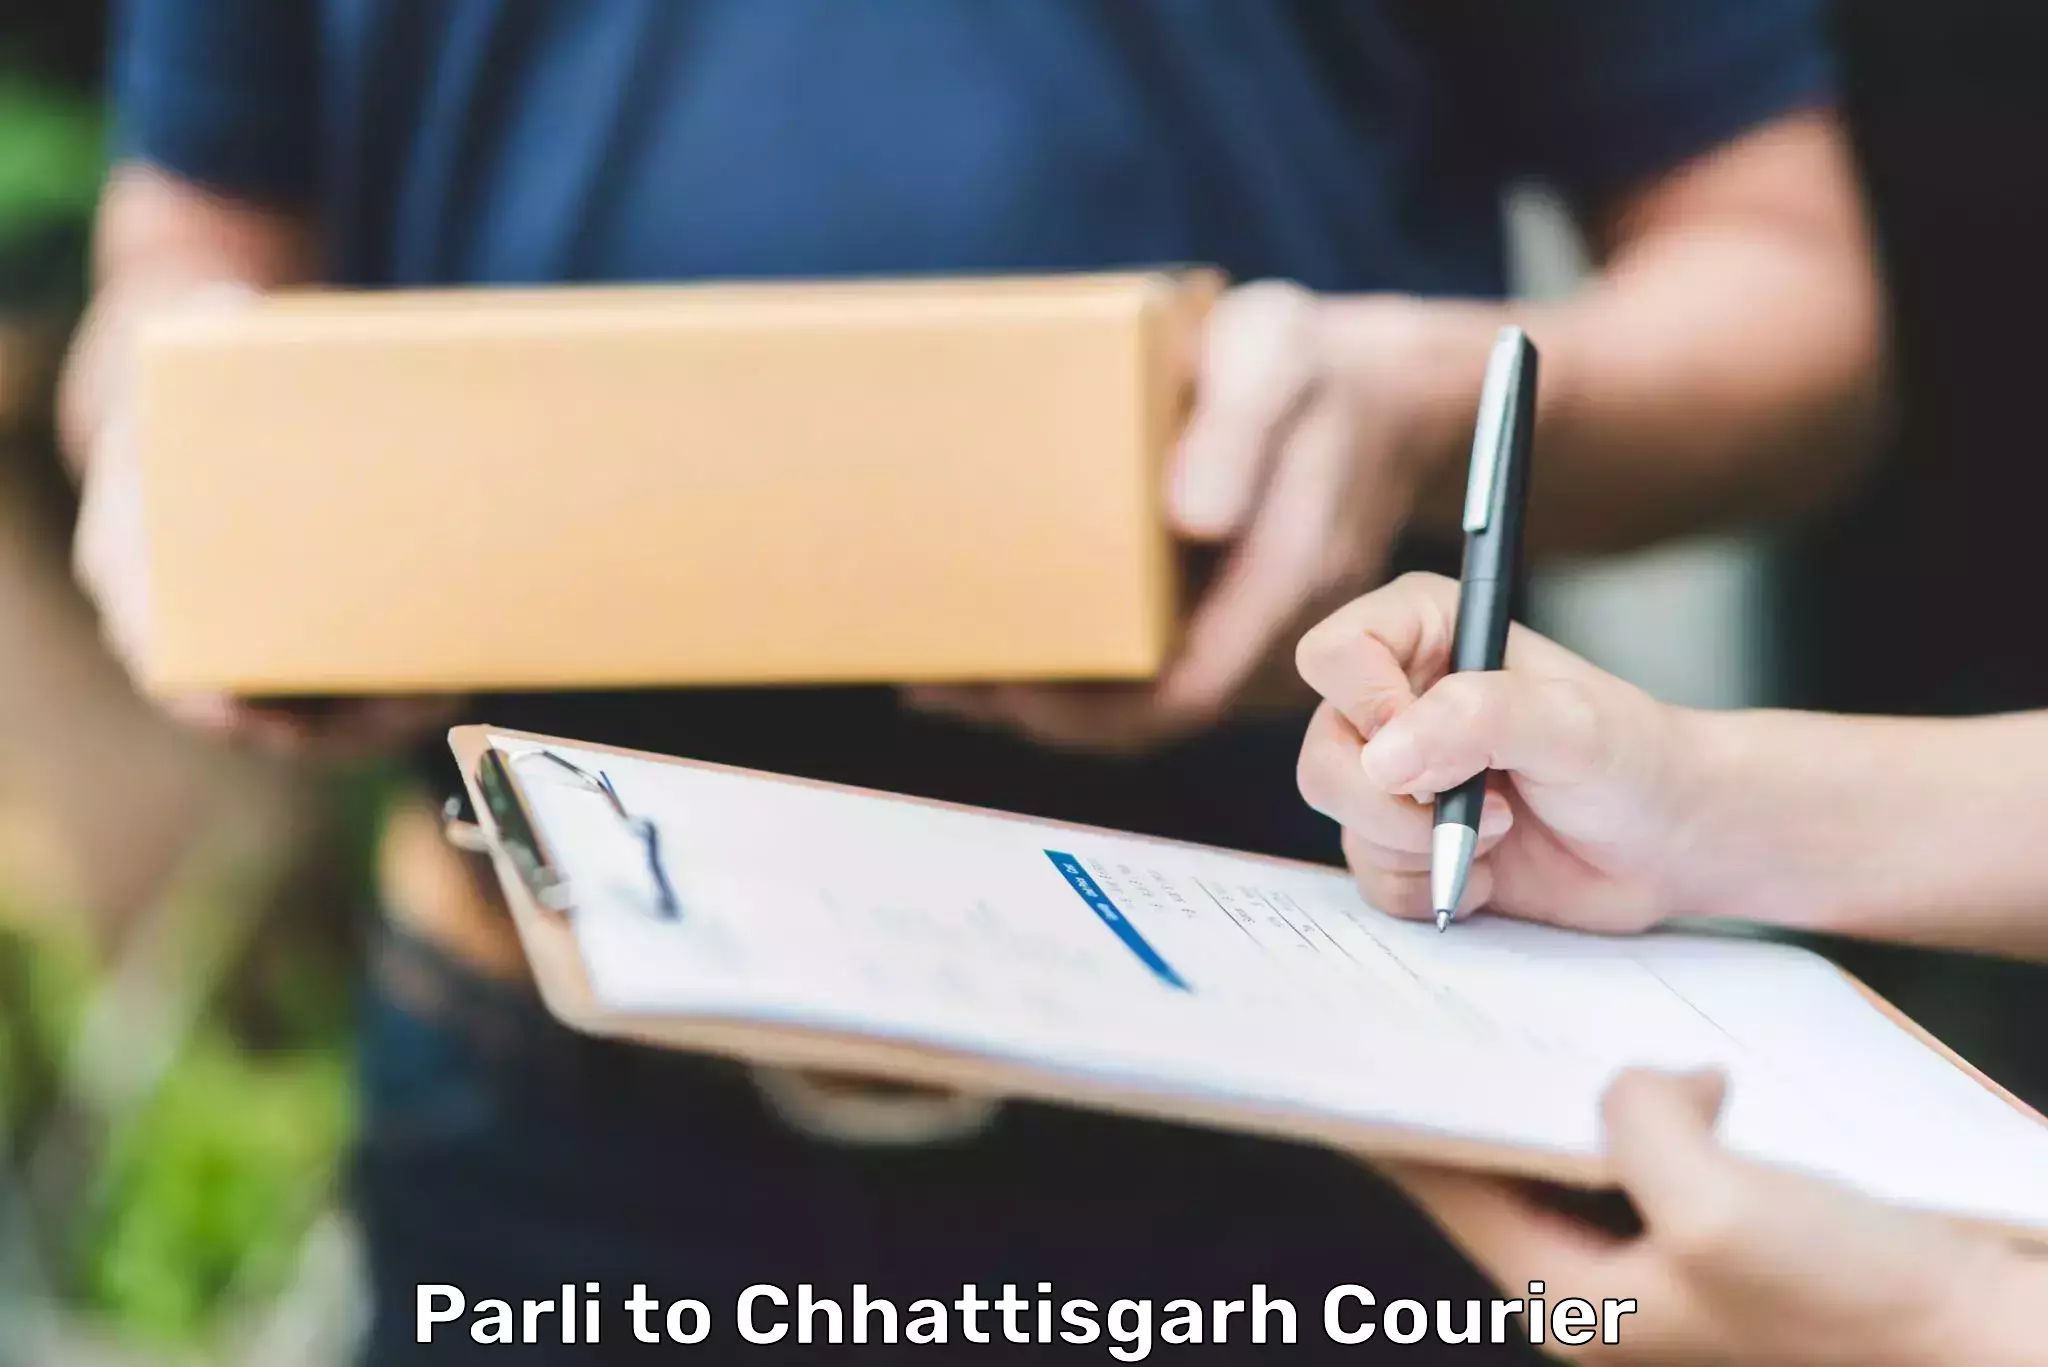 Domestic courier Parli to Bijapur Chhattisgarh